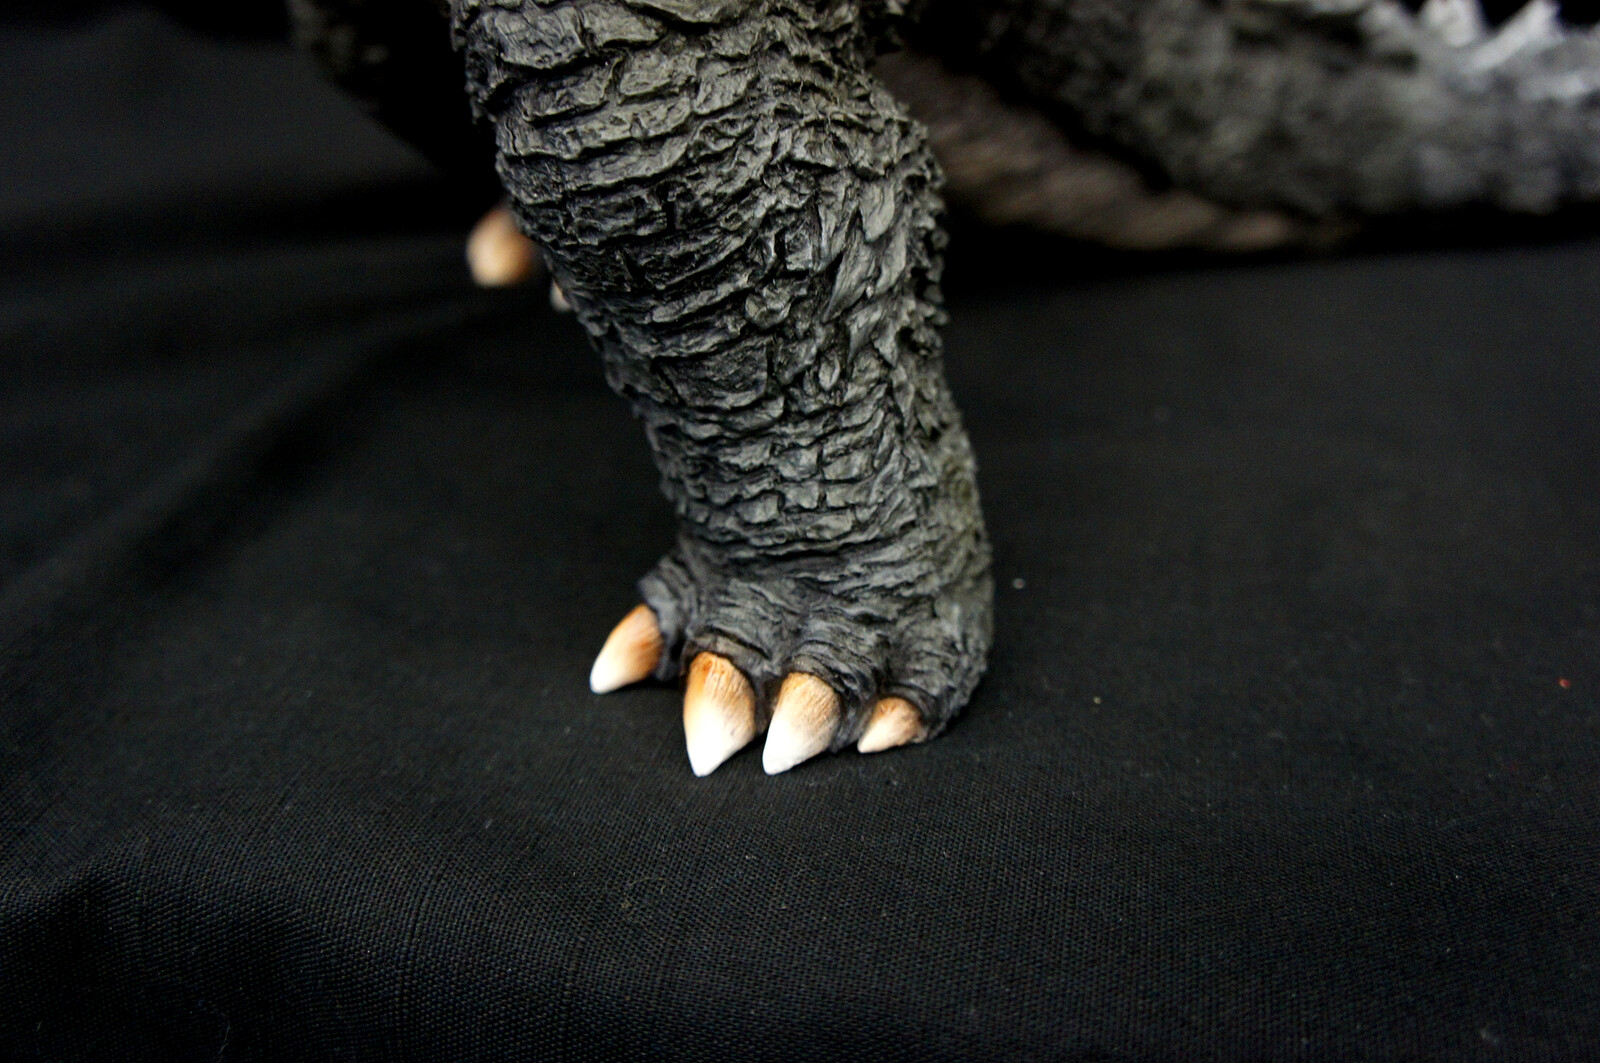 2014 Godzilla 30 cm Art Statue
https://www.solidart.club/